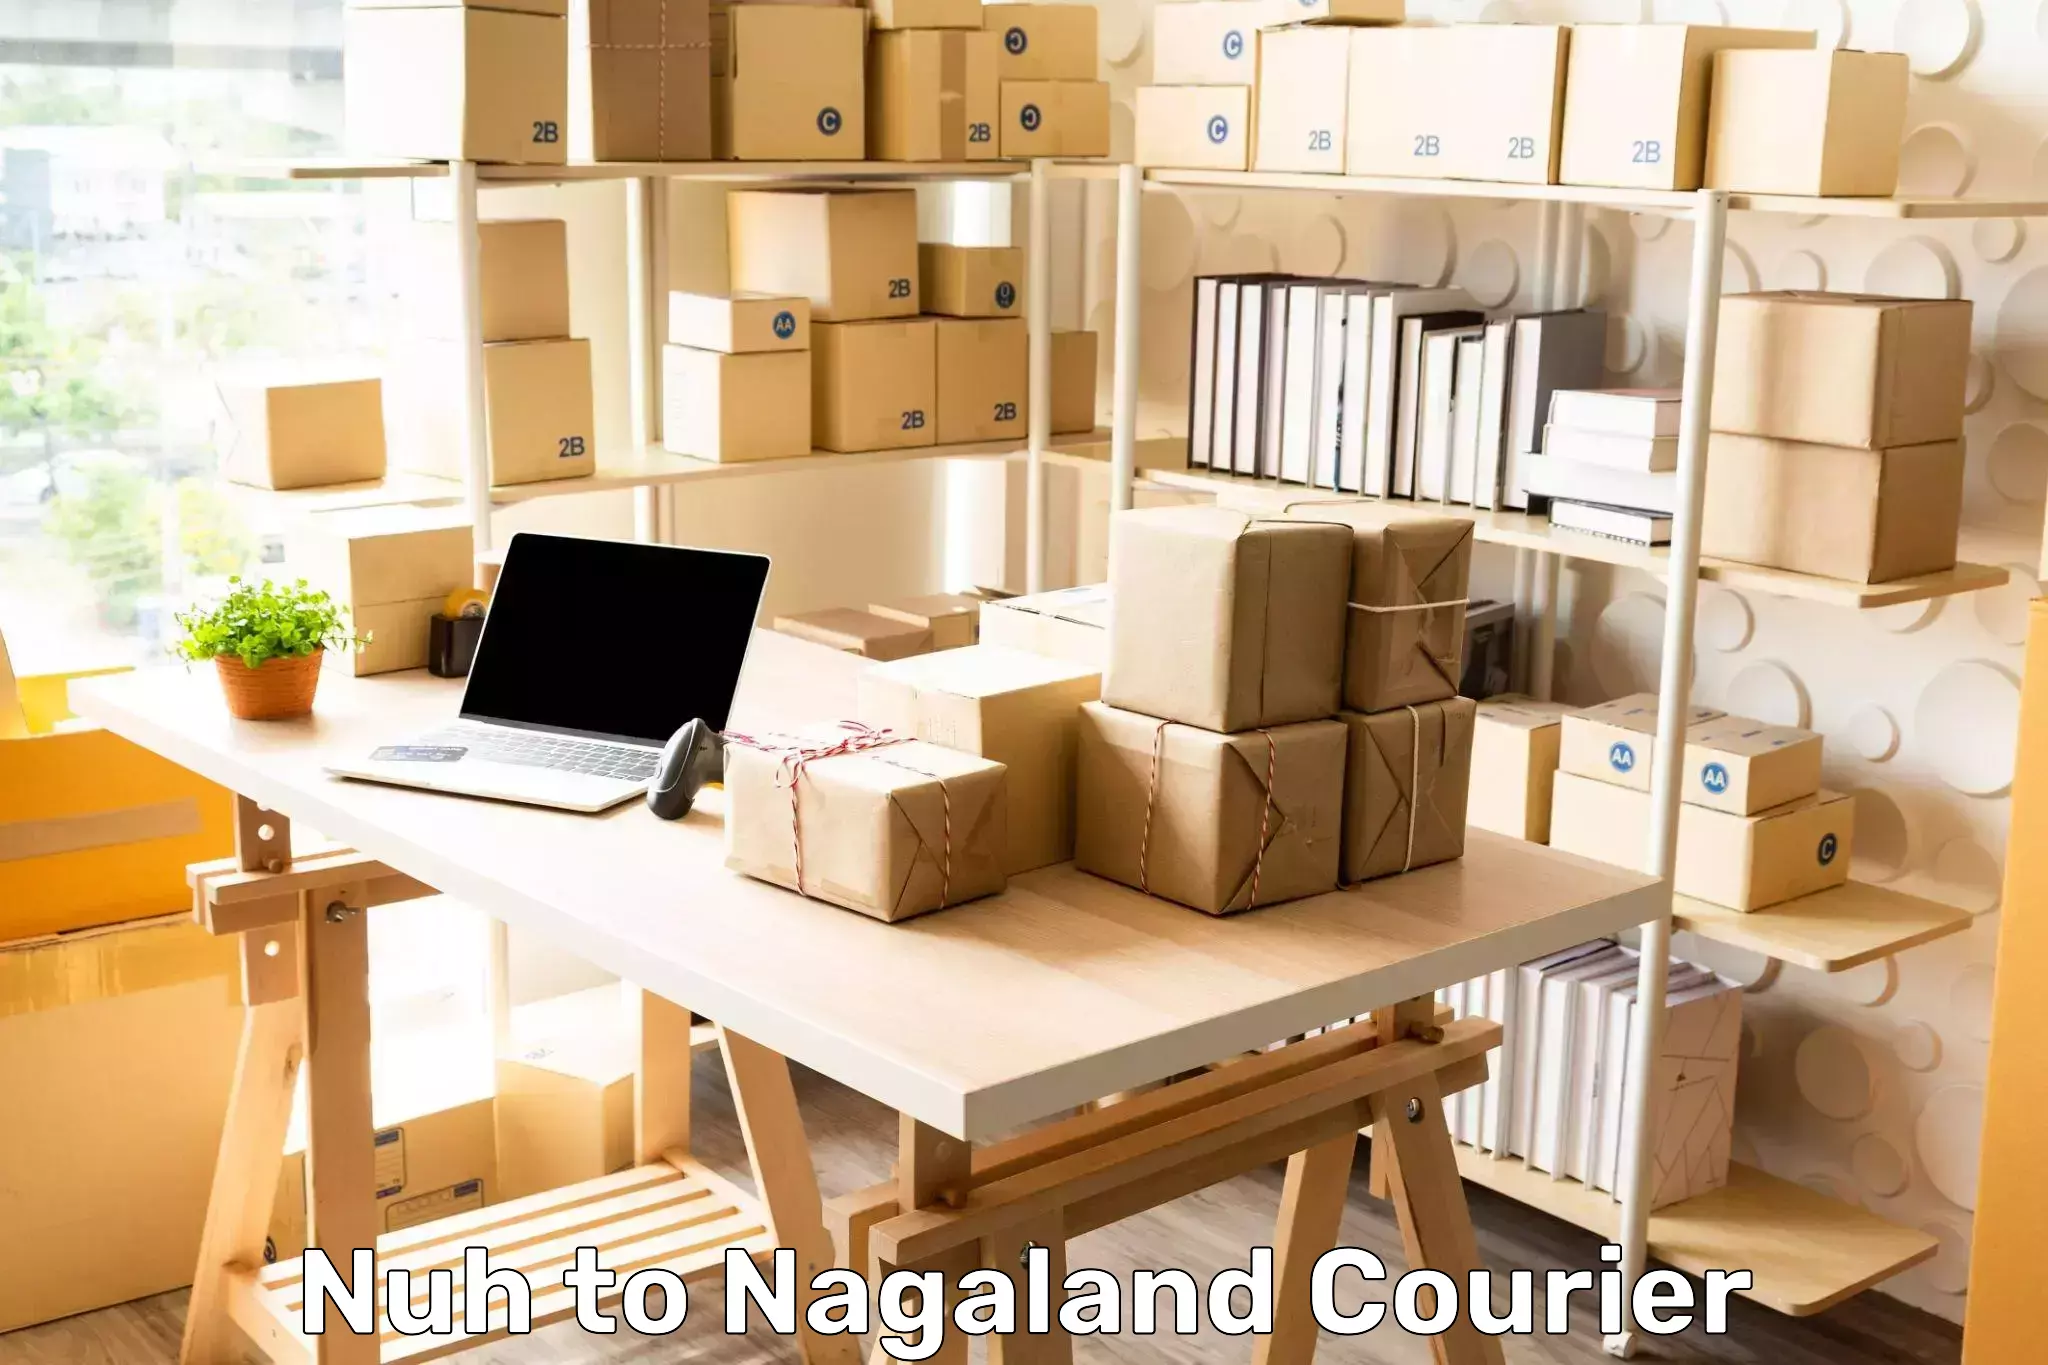 Express postal services Nuh to Nagaland